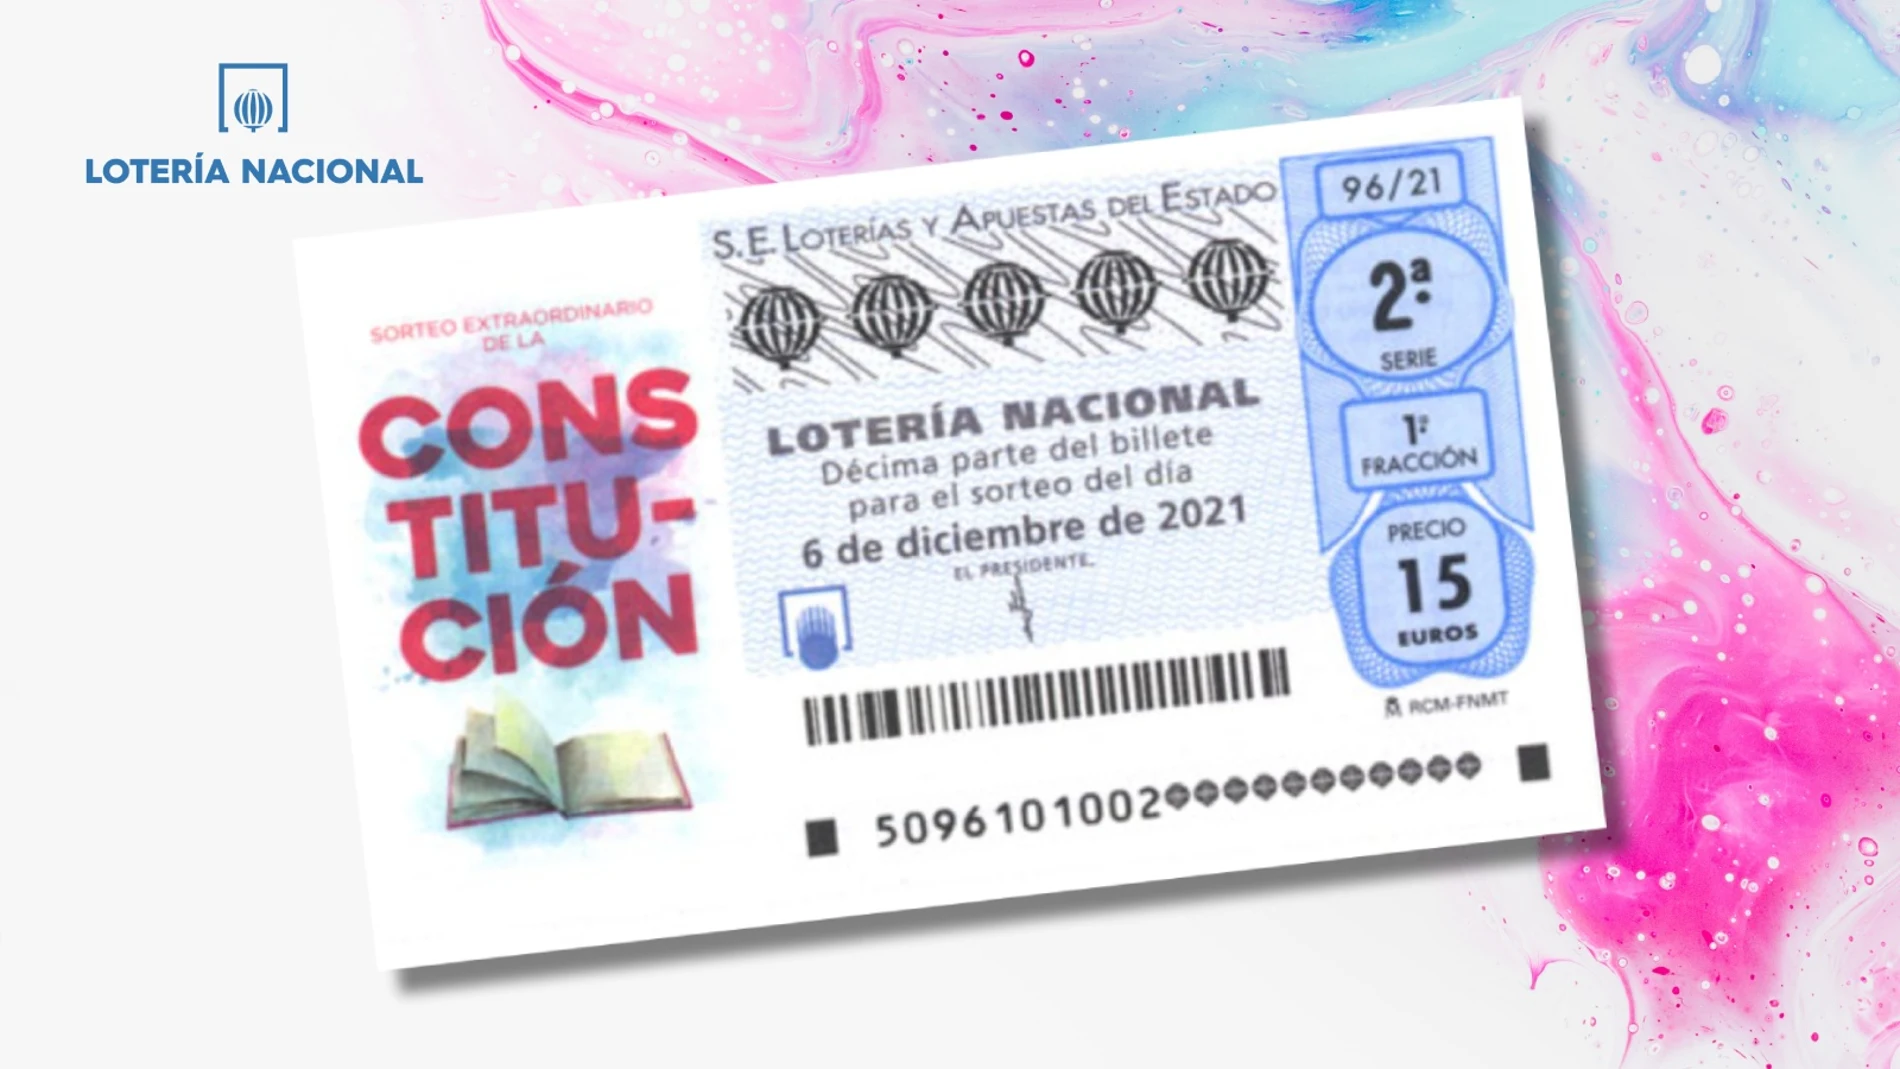 Sorteo Extraordinario de la Constitución de la Lotería Nacional 2021